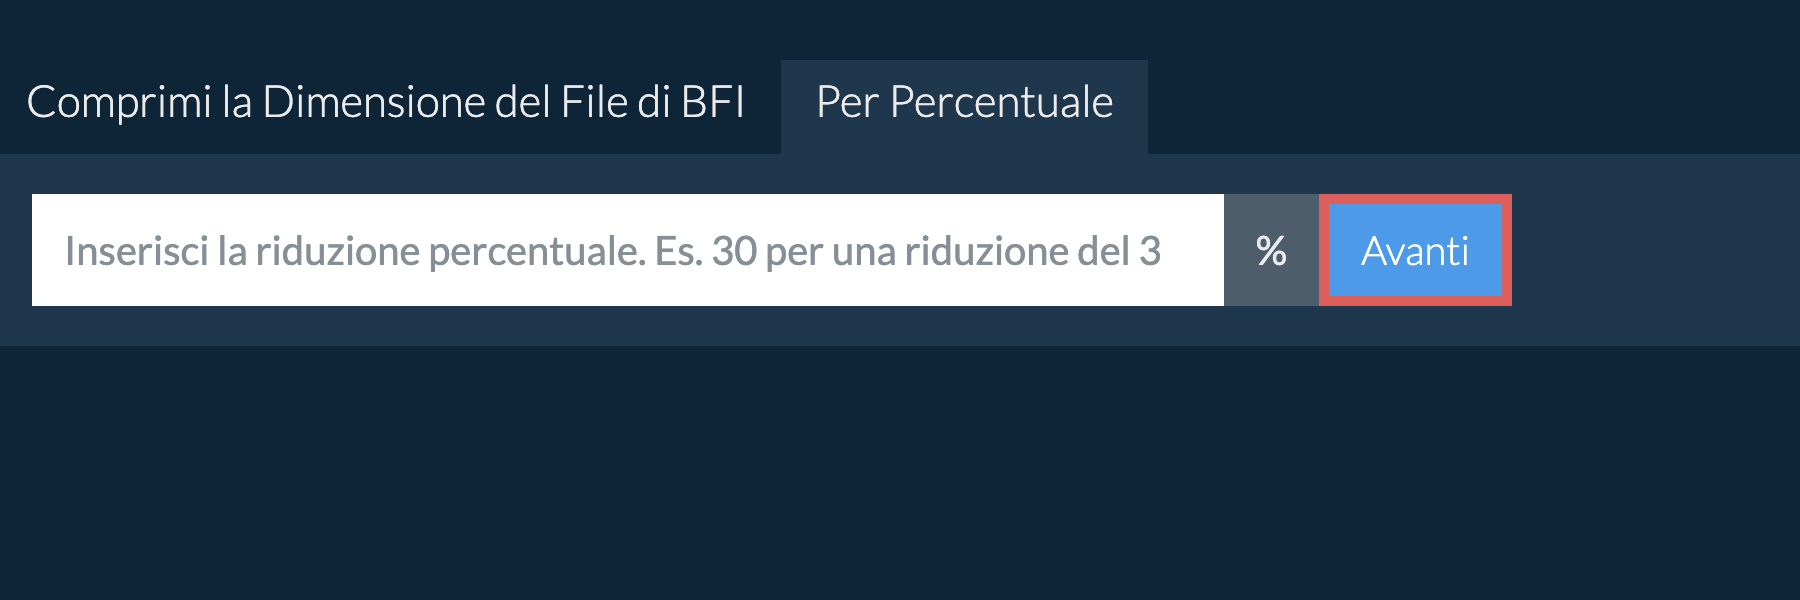 Riduci bfi Per Percentuale